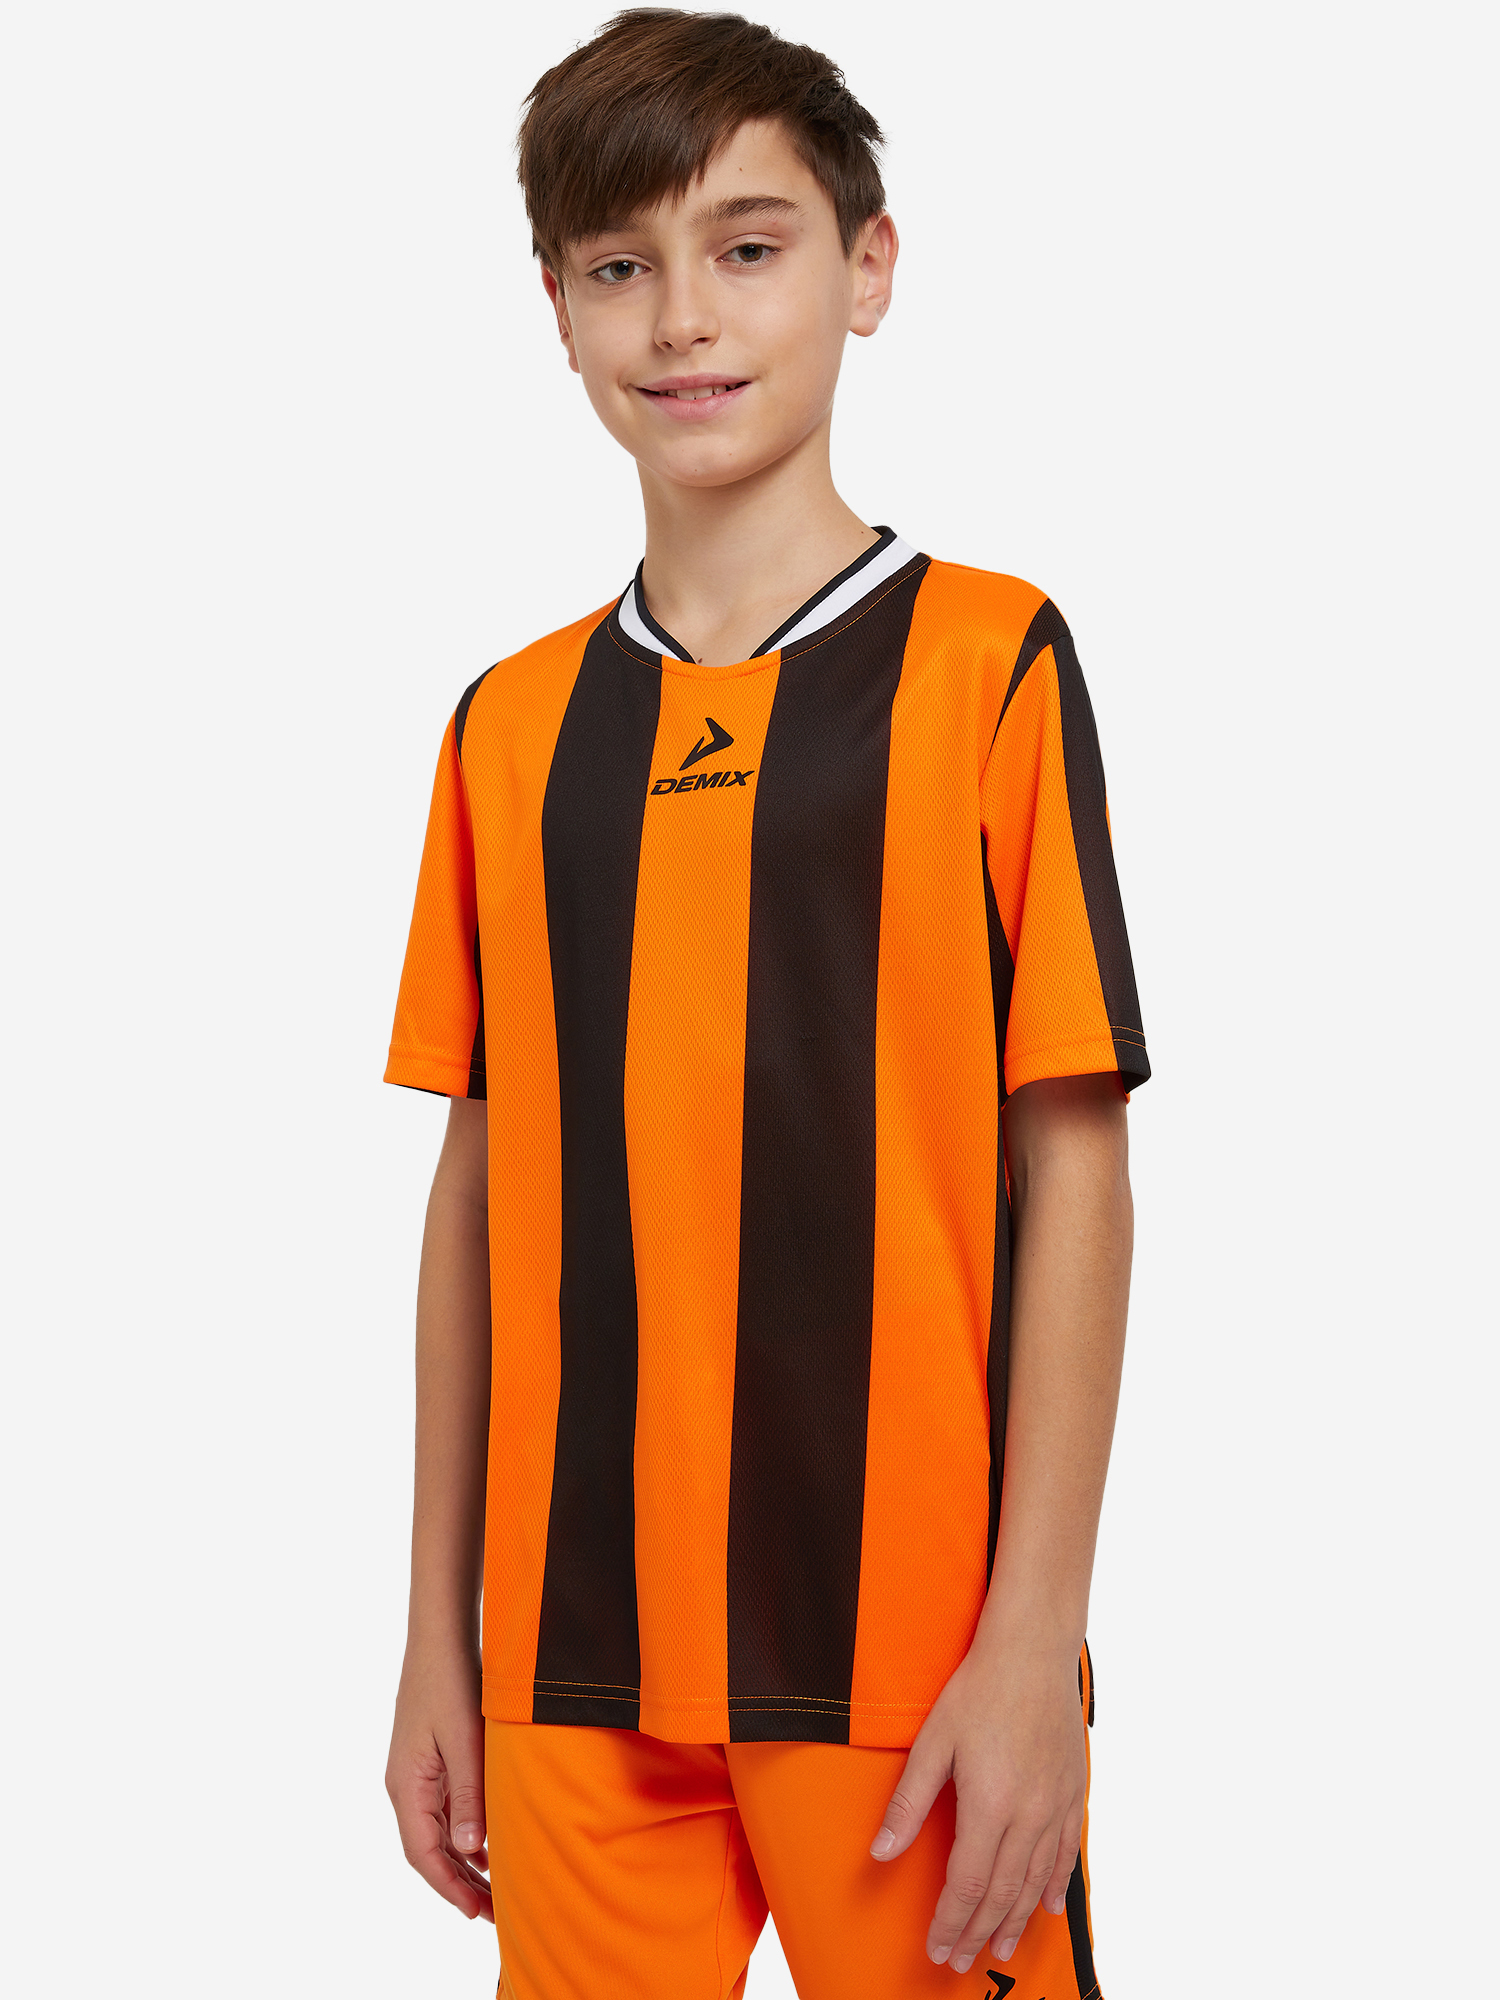 Футболка для мальчиков Demix Legacy, Оранжевый футболка для мальчиков demix legacy оранжевый